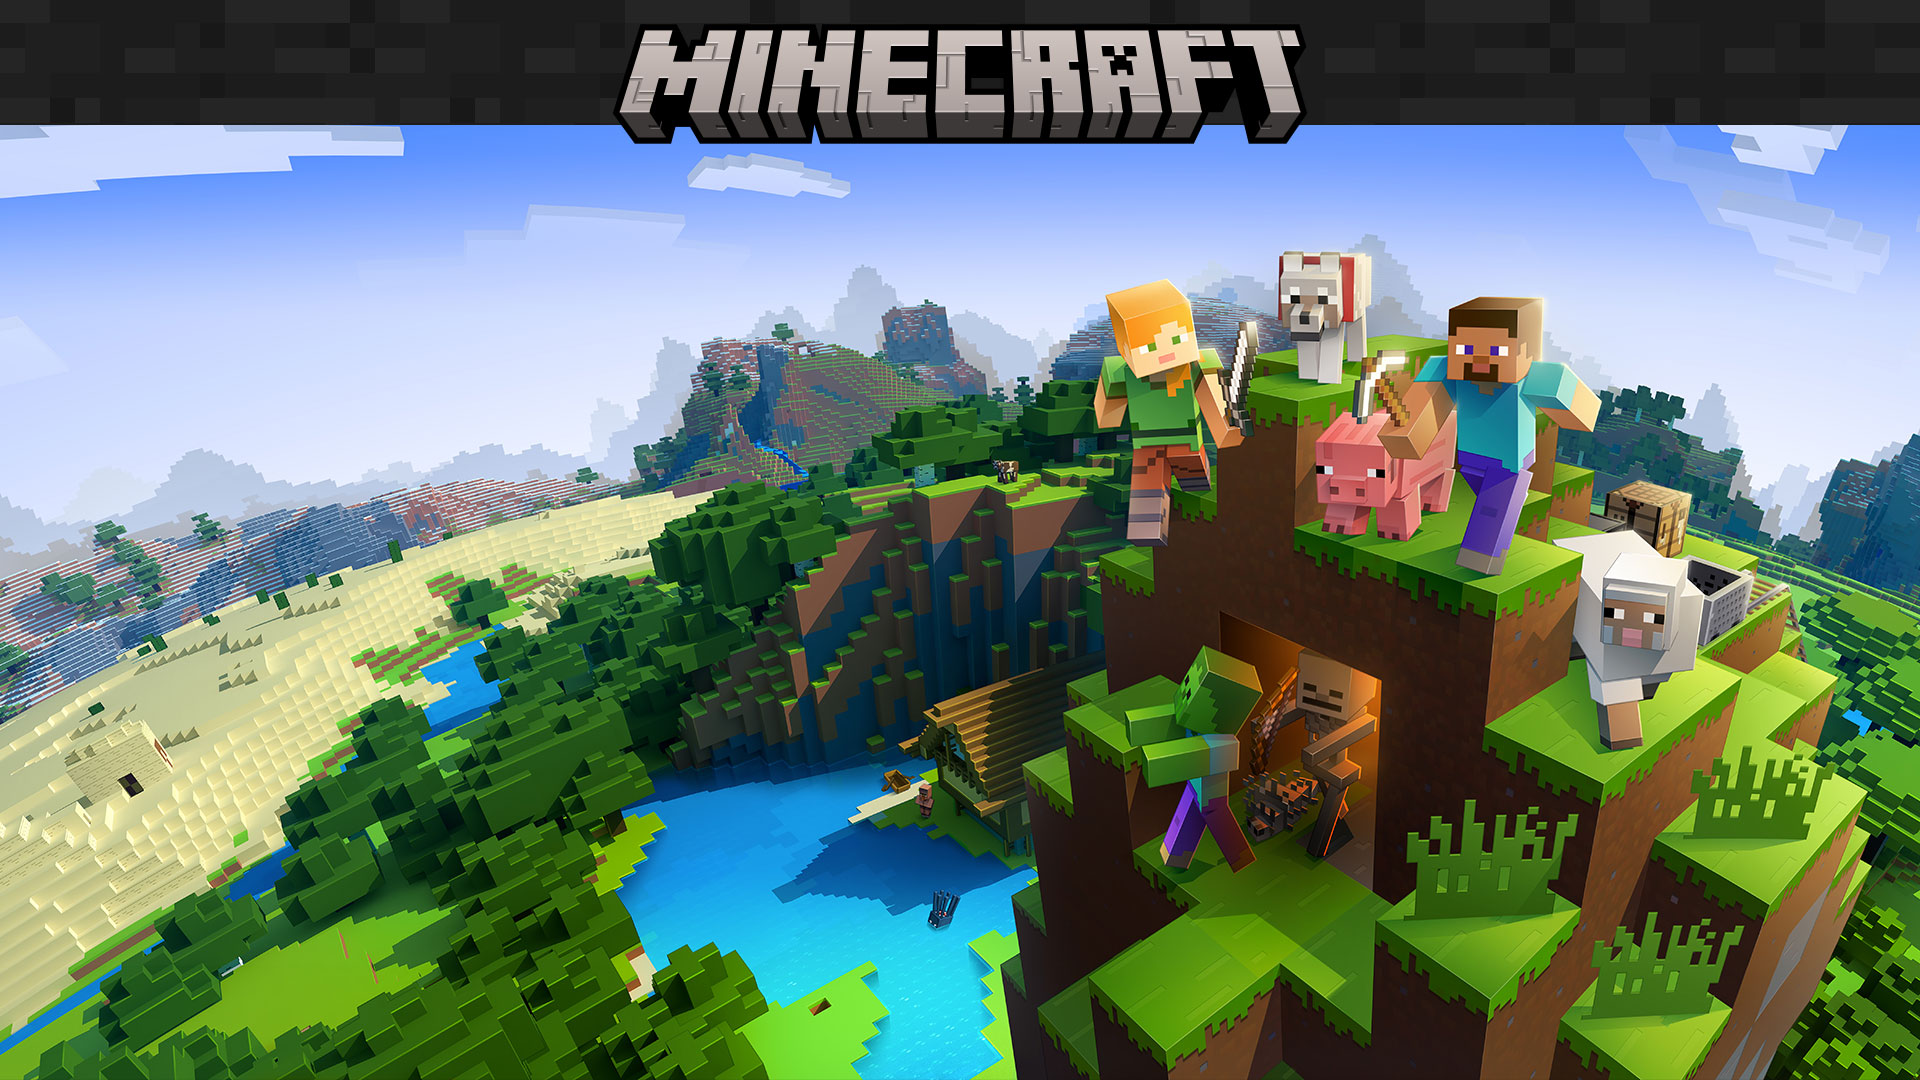 Logo hry Minecraft s postavami z hry a v pozadí je prostredie s blokmi